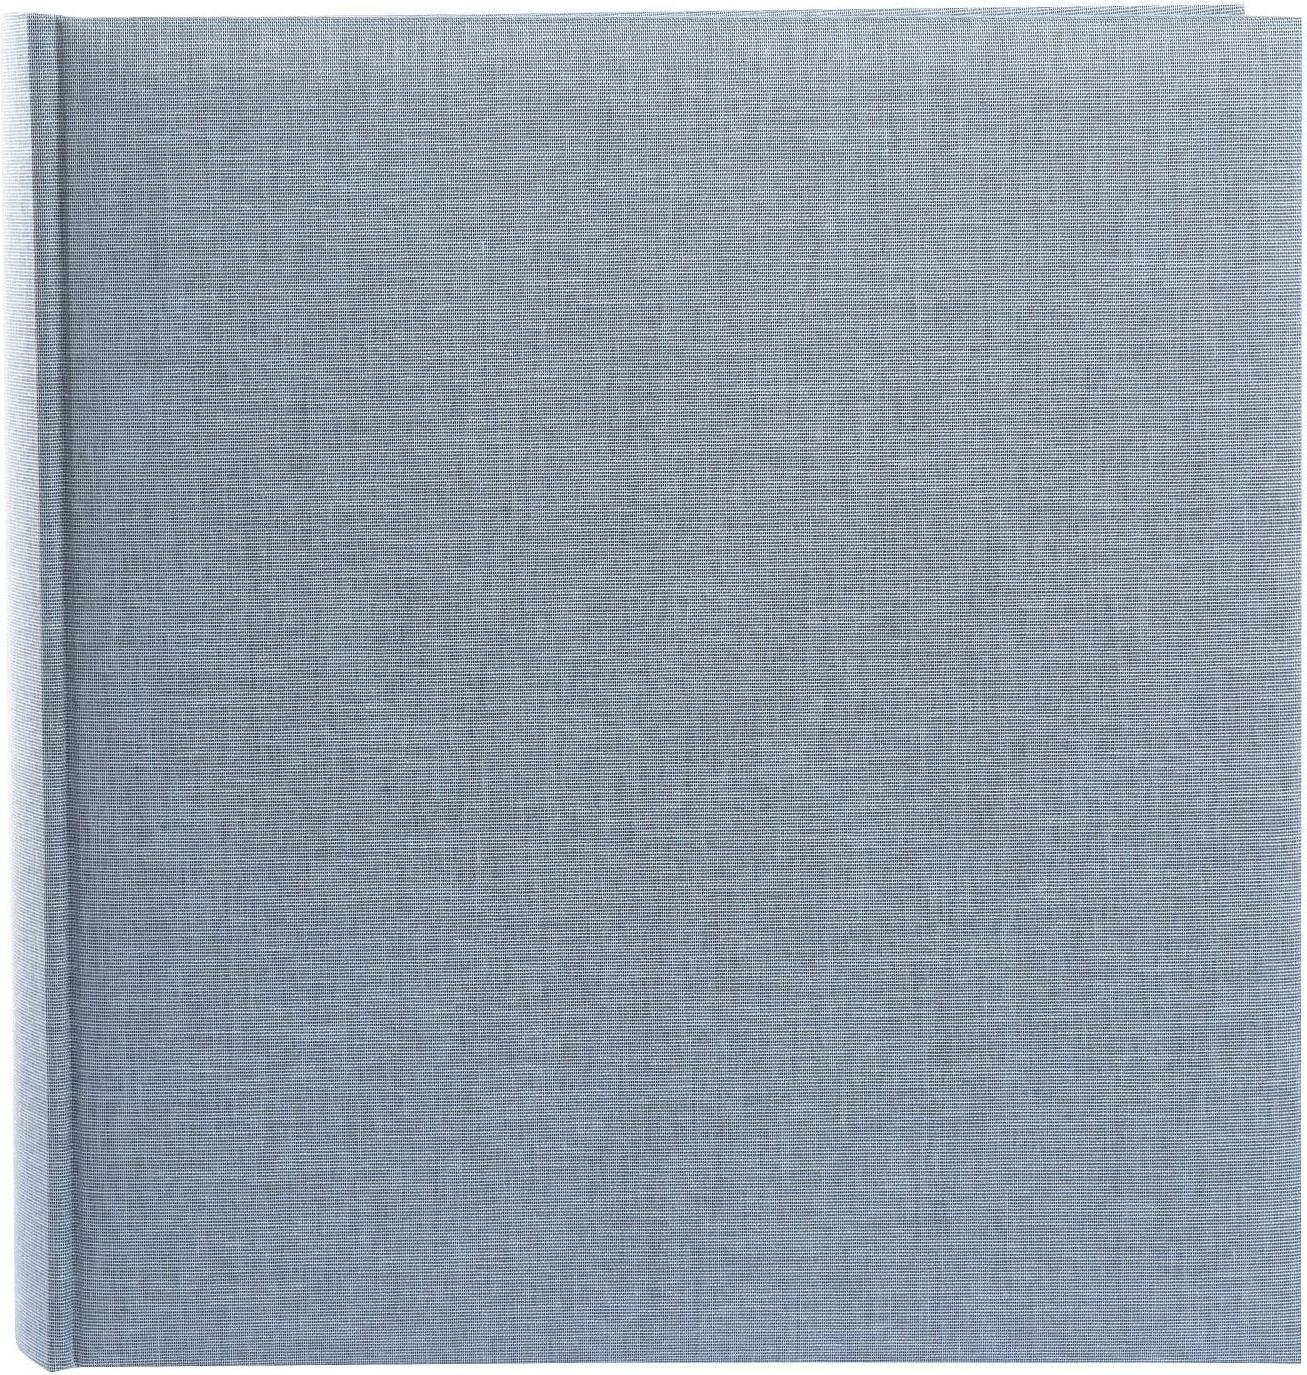 GOLDBUCH Summertime Trend2 30x31 100 weiße Seiten blau-grau (31607)